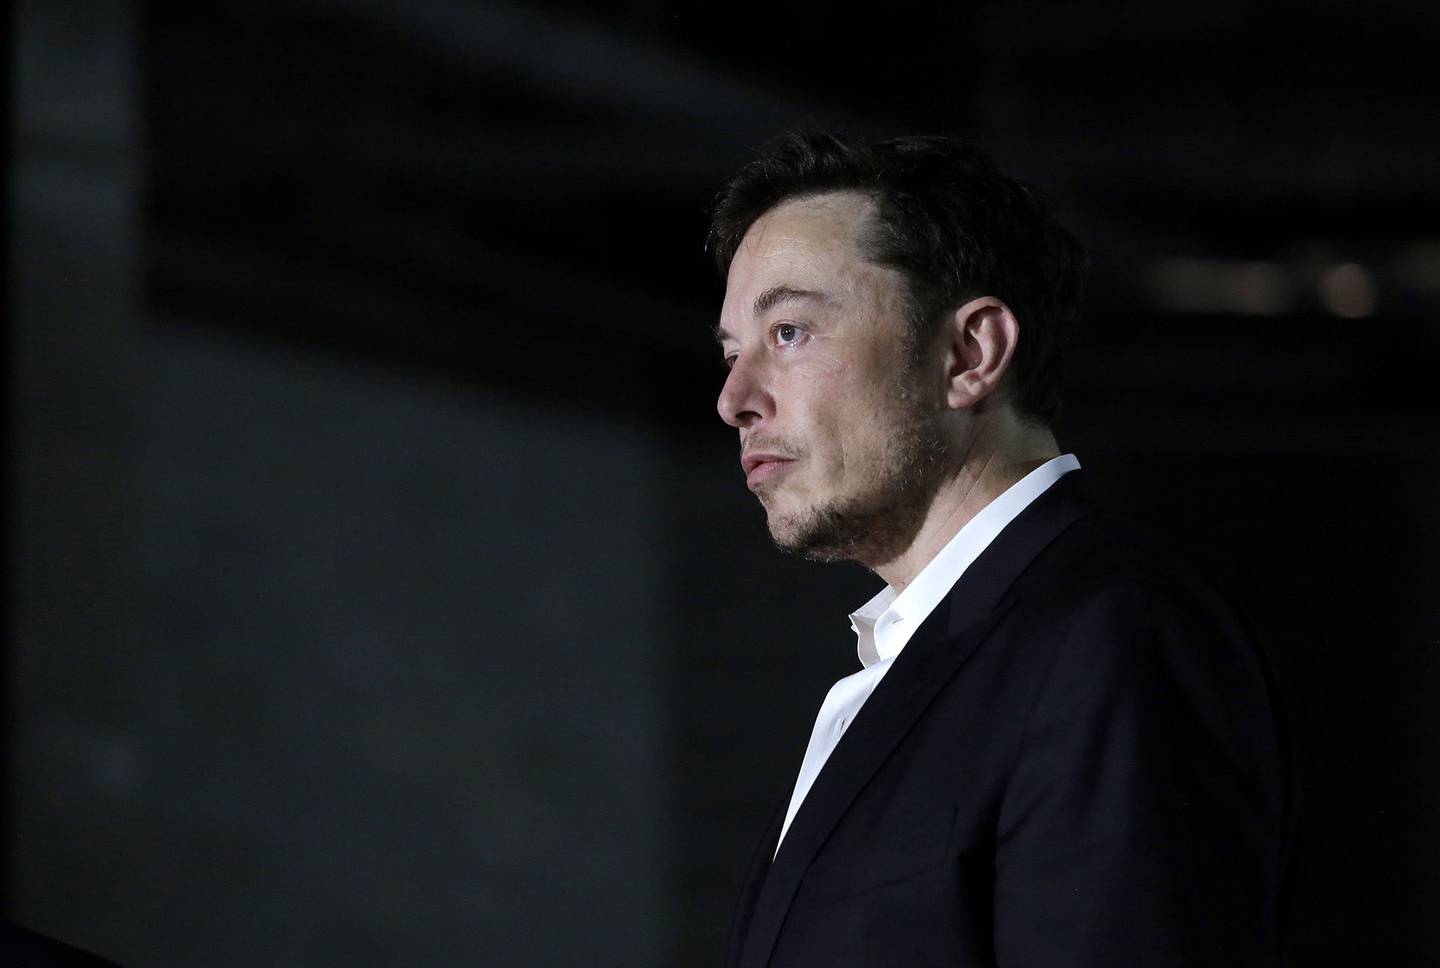 Bilionário disse que o compilador do índice “perdeu sua integridade”, após retirar Tesla do grupo de empresas ESG.